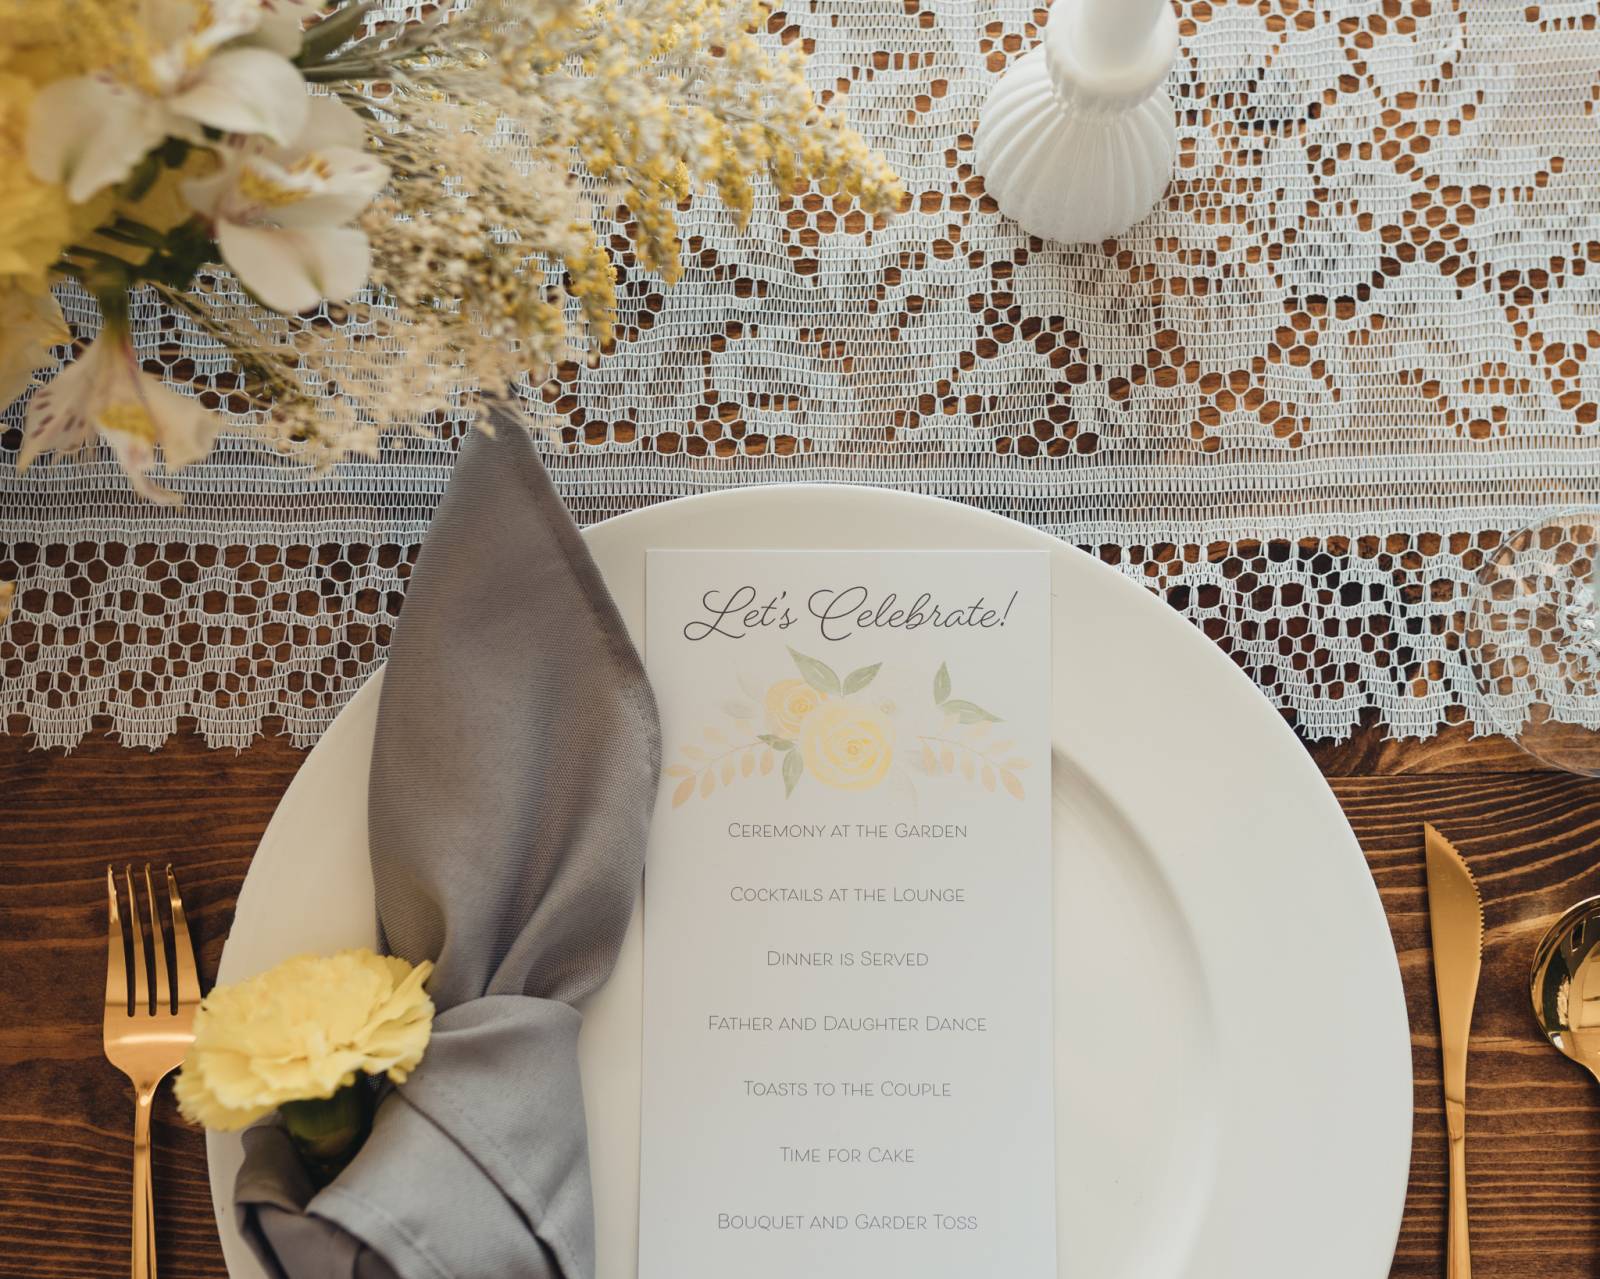 Table, setting, napkin, menu, runner, flowers